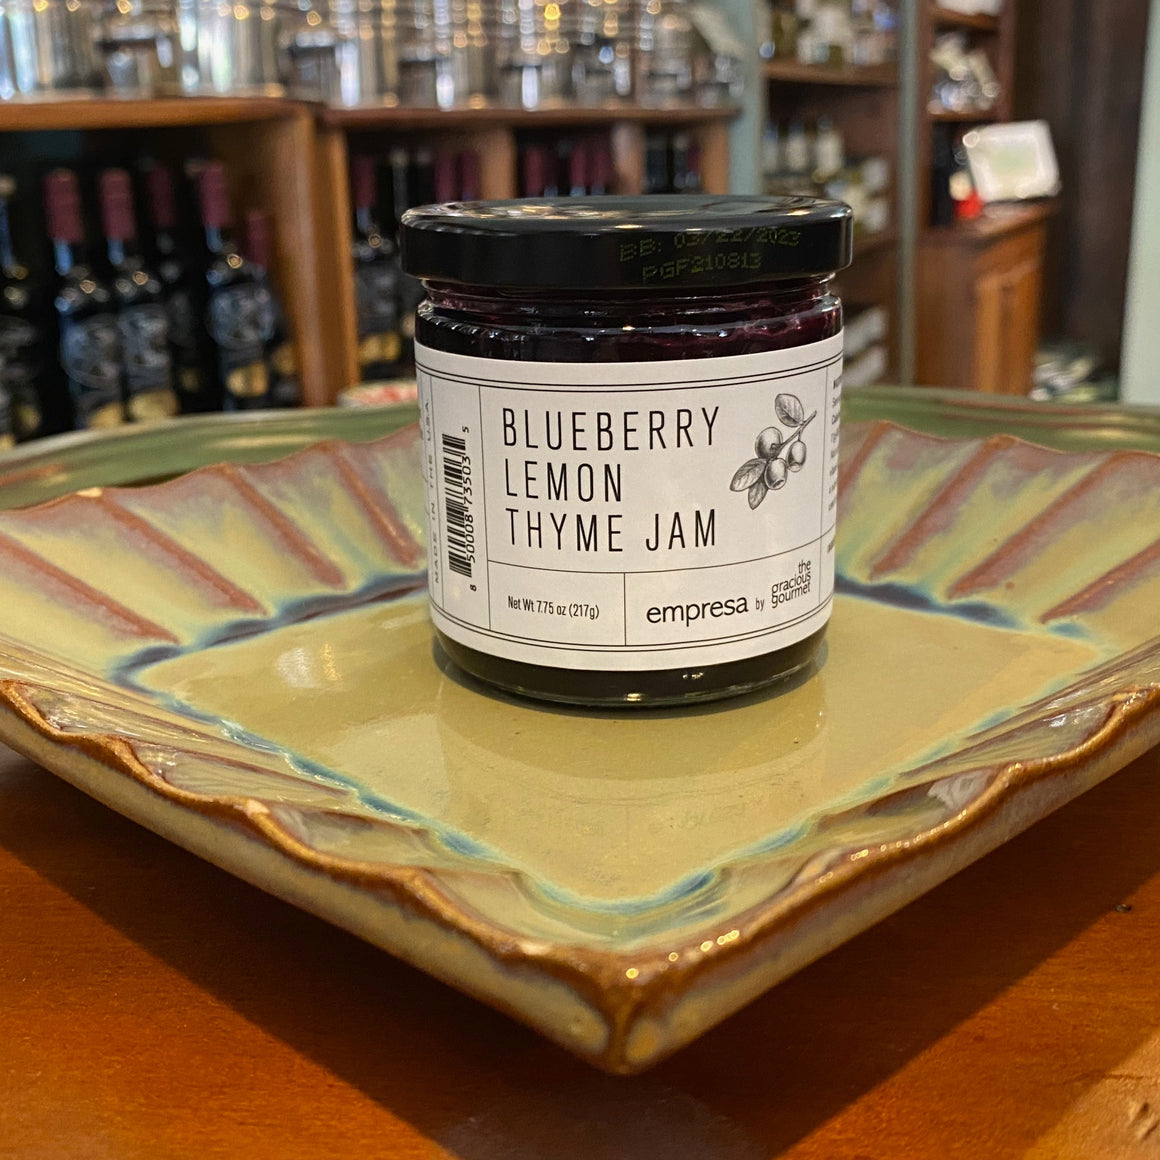 Blueberry Lemon Thyme Jam - A Taste of Olive